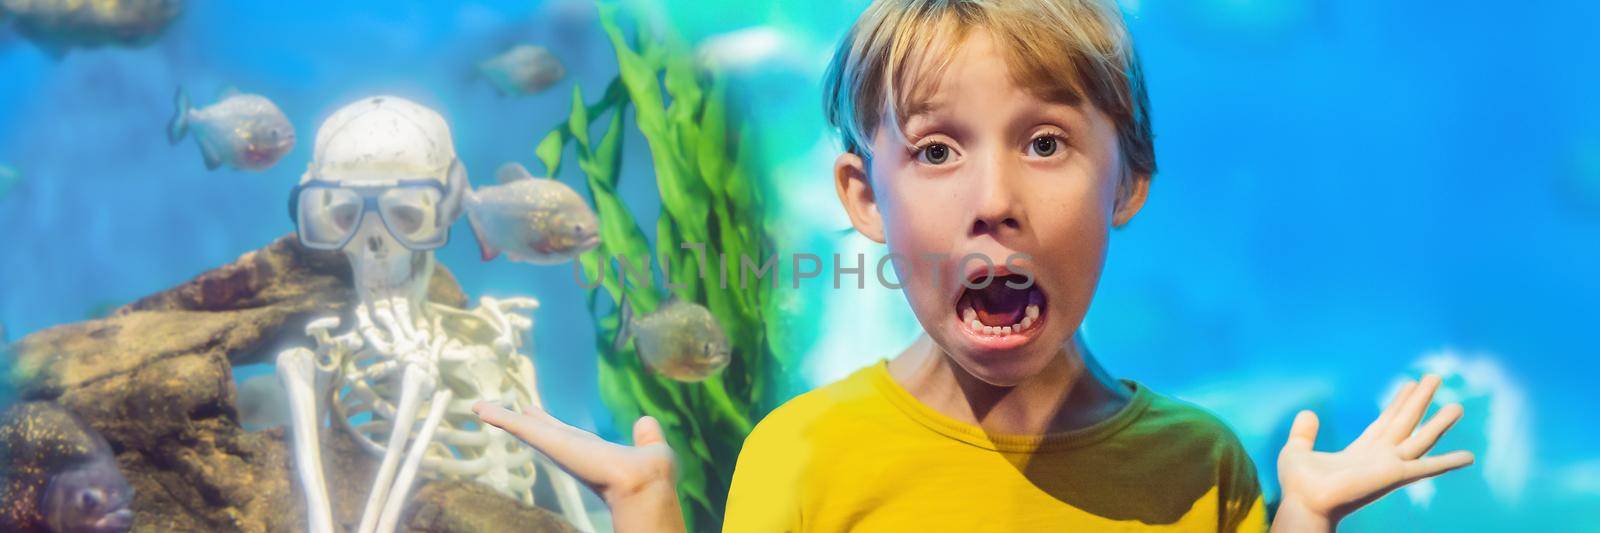 The boy got scared Skeleton and piranha in an aquarium BANNER, LONG FORMAT by galitskaya